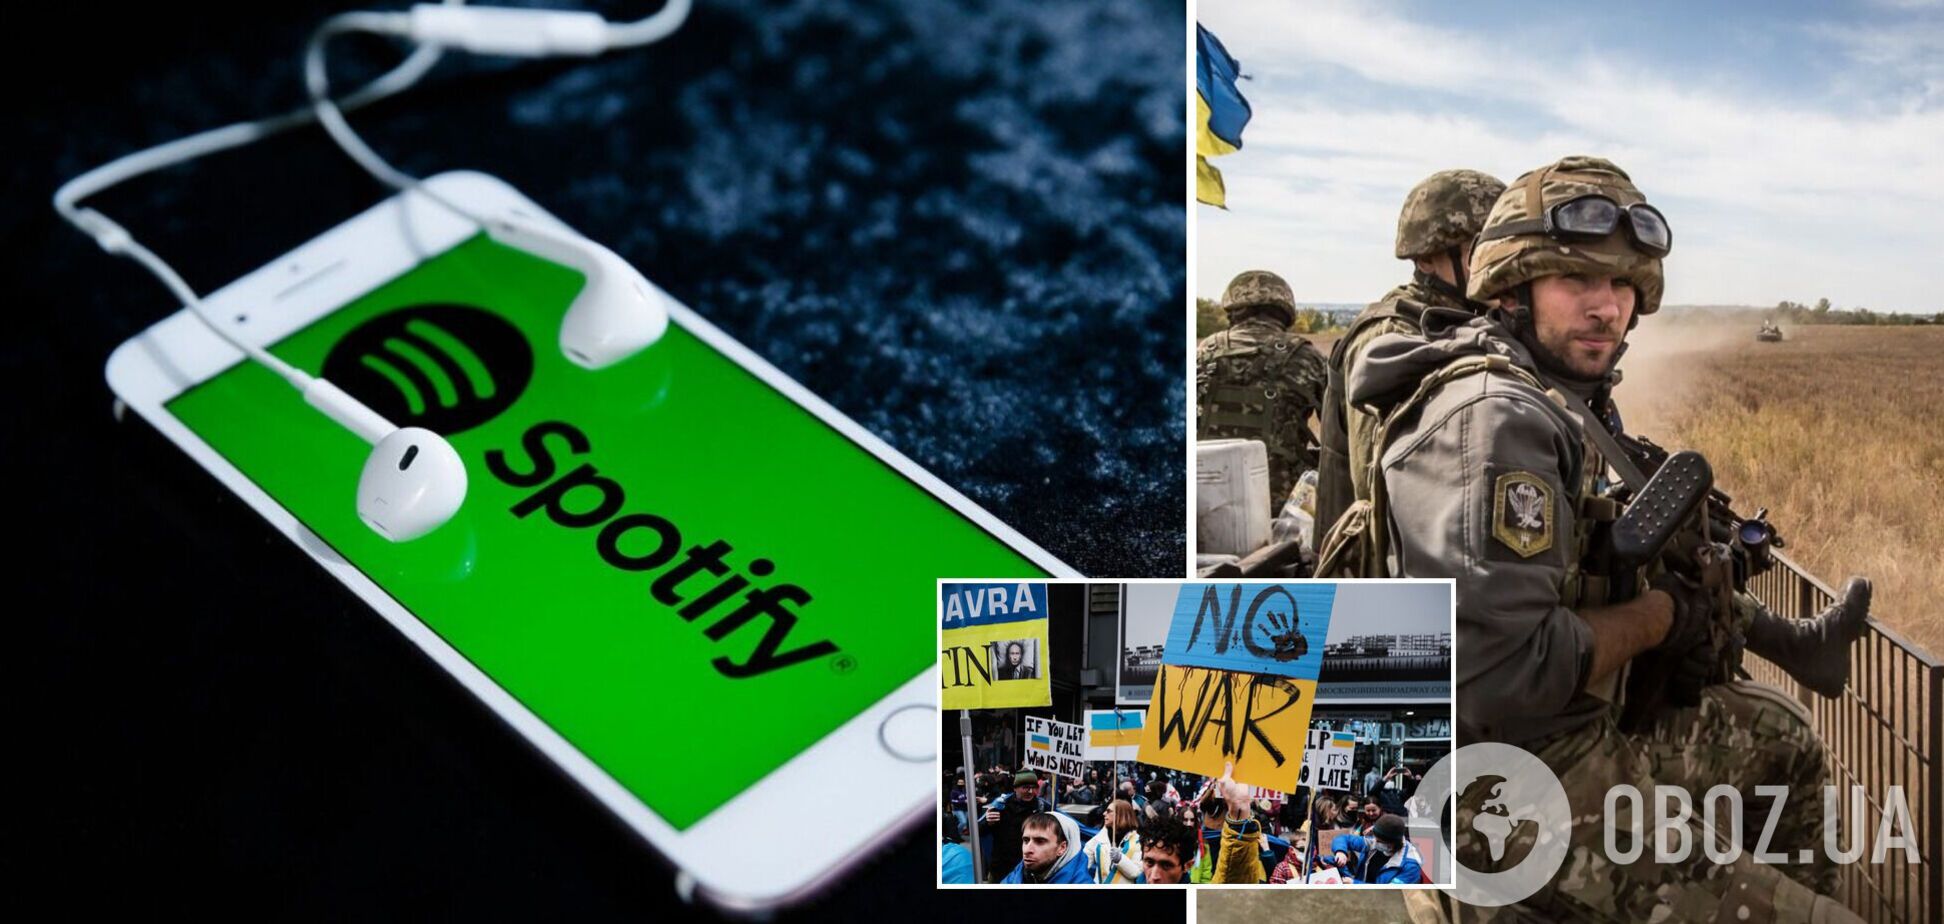 Українець у Spotify створив плейлист – приховане звернення до світу: дайте нам більше зброї!